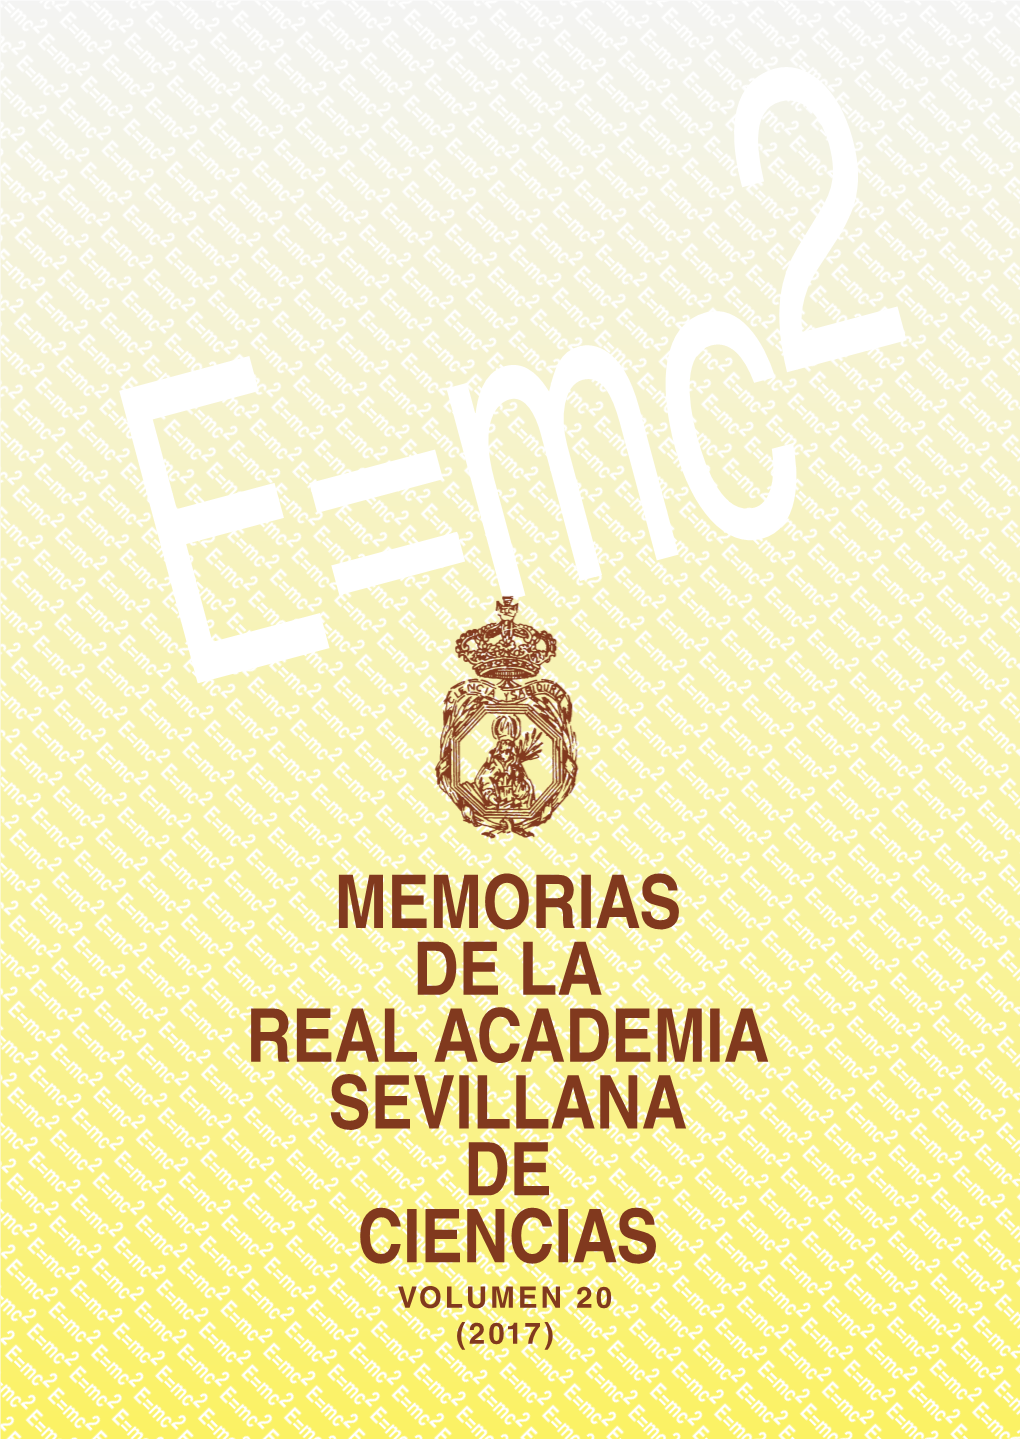 Memorias De La Real Academia Sevillana De Ciencias Volumen 20 (2017) Memorias De La Real Academia Sevillana De Ciencias 2017